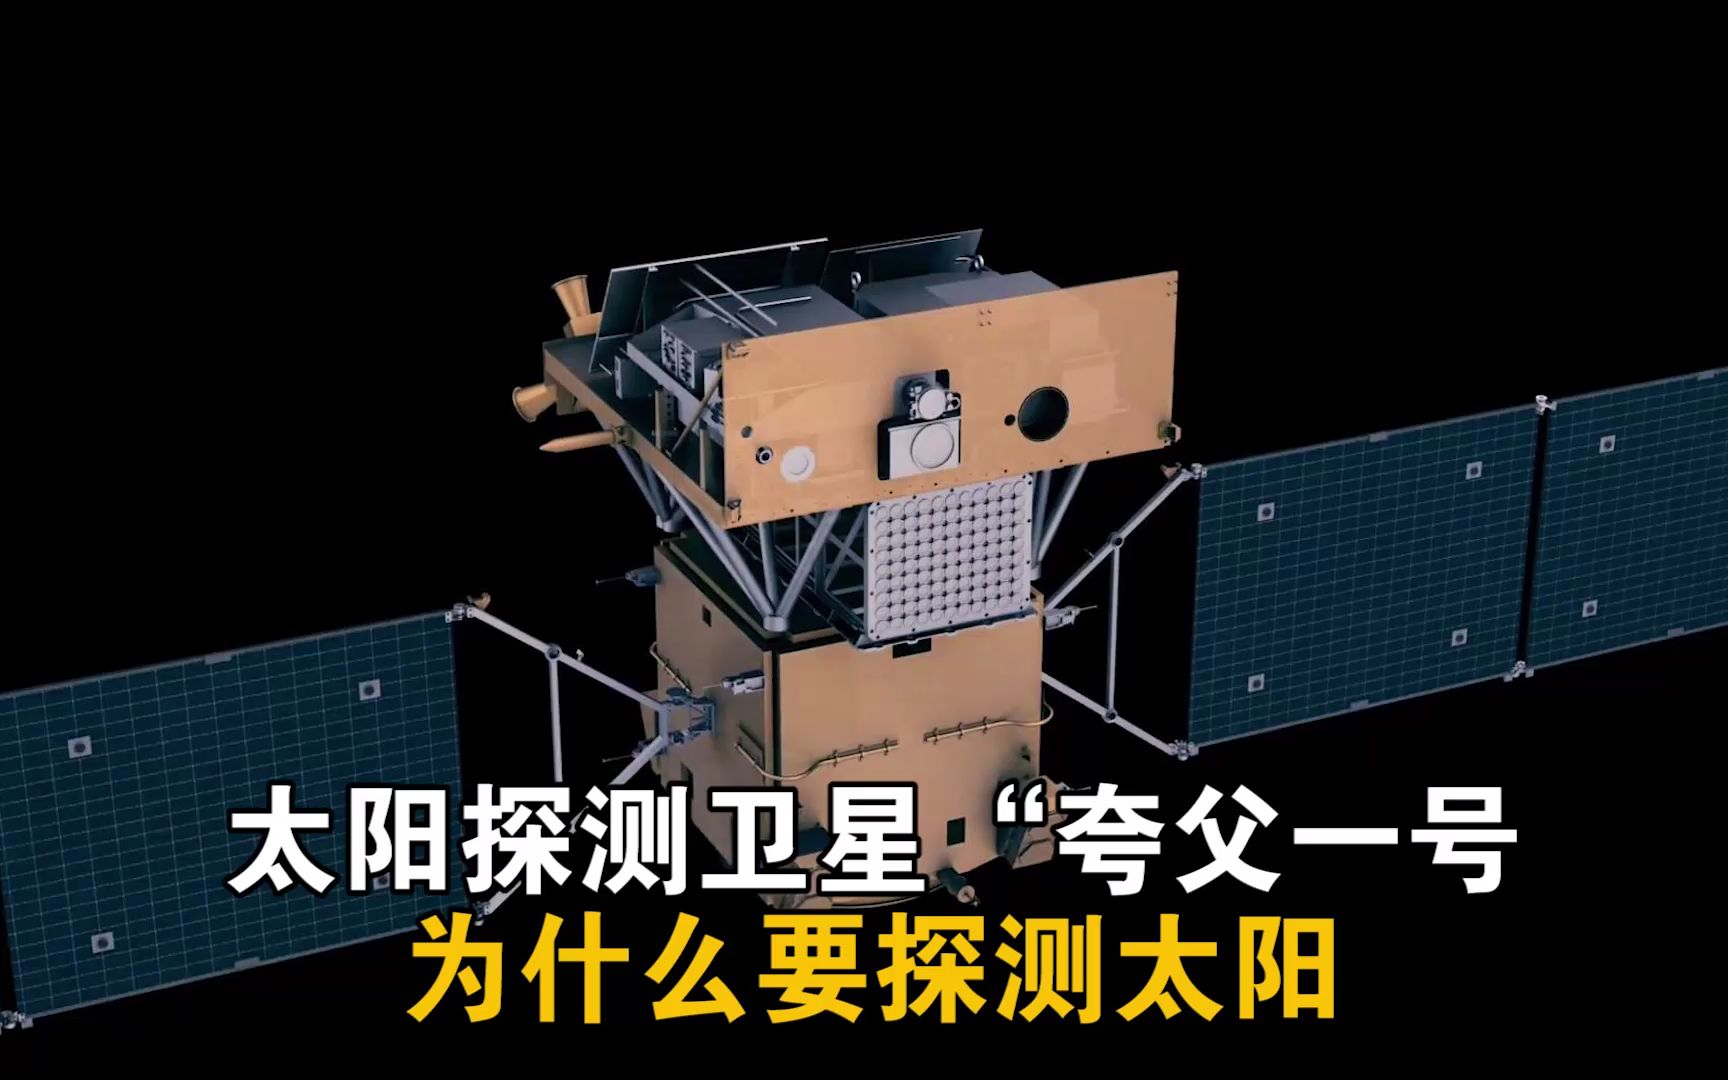 中国夸父号太阳探测器图片